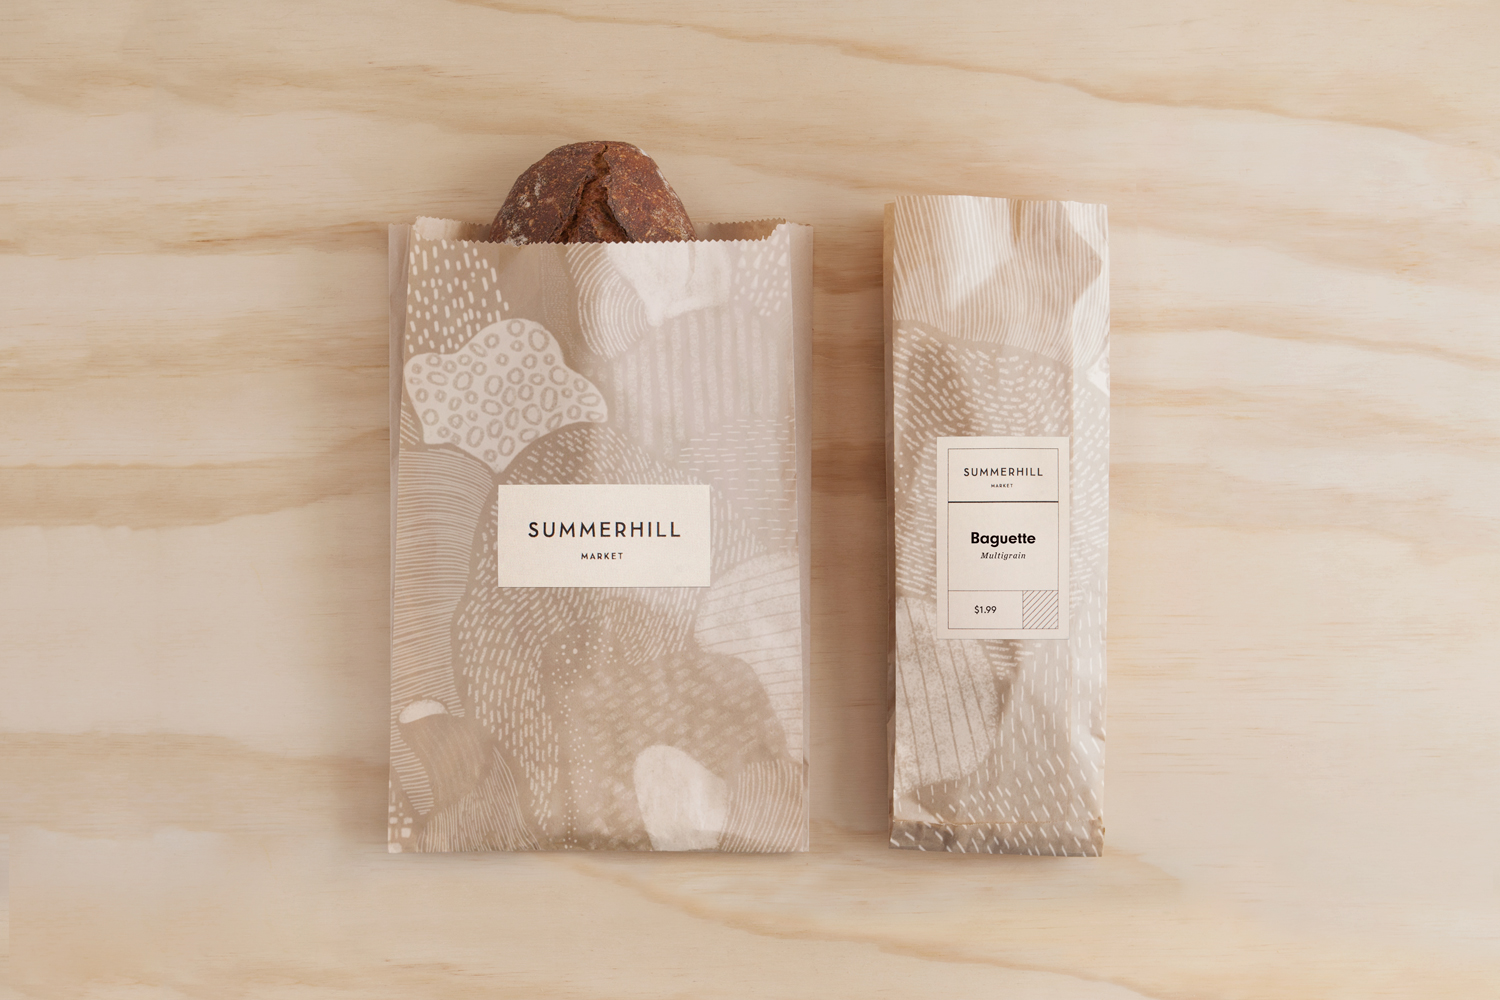 烘焙面包包装袋设计西安oe欧亿体育app官方下载
品牌包装设计